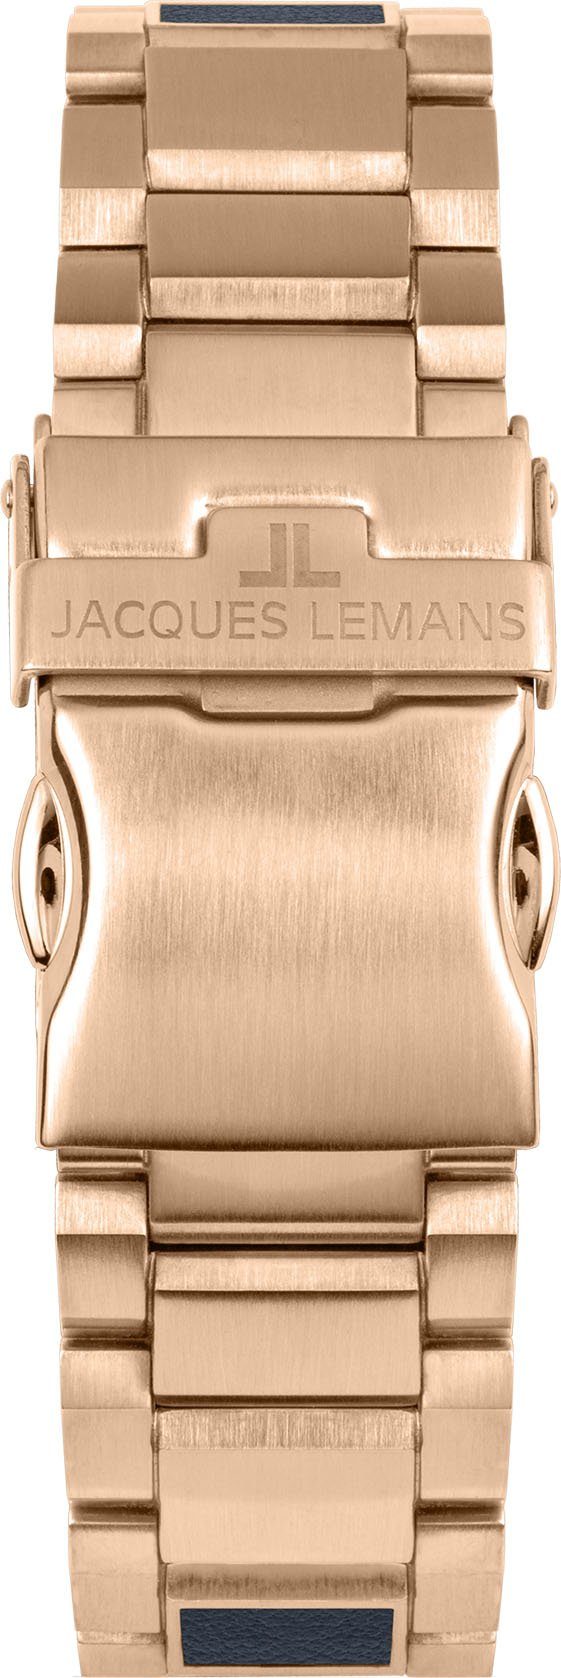 Jacques Lemans Solaruhr Eco Power, 1-2116F